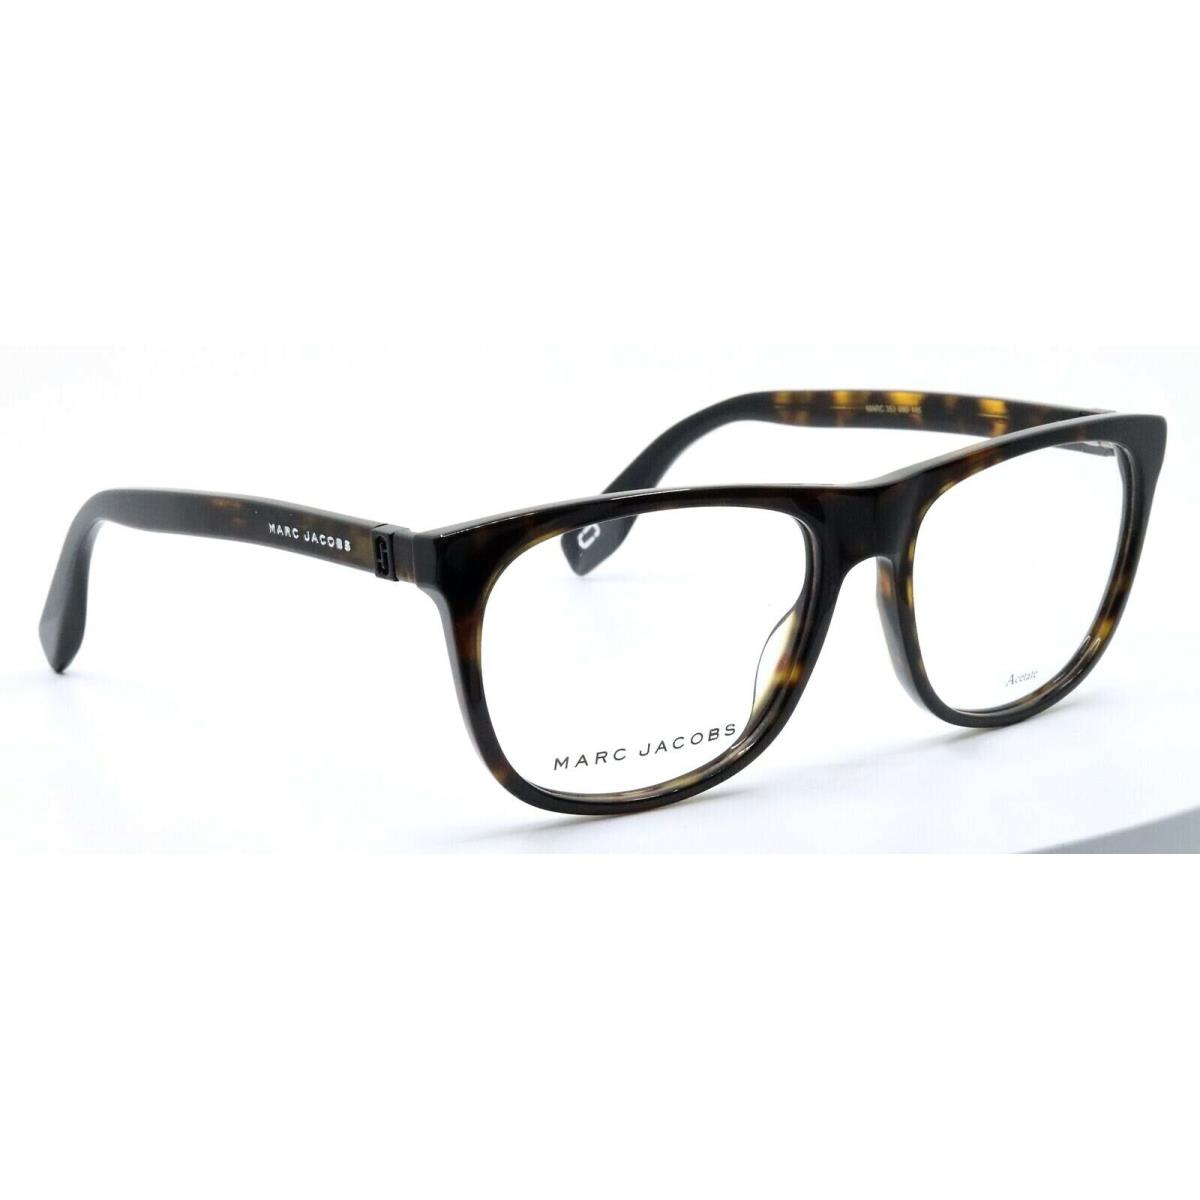 Marc Jacobs 353 086 Dark Havana Brown Womens Square Eyeglasses Frames 54-17-145